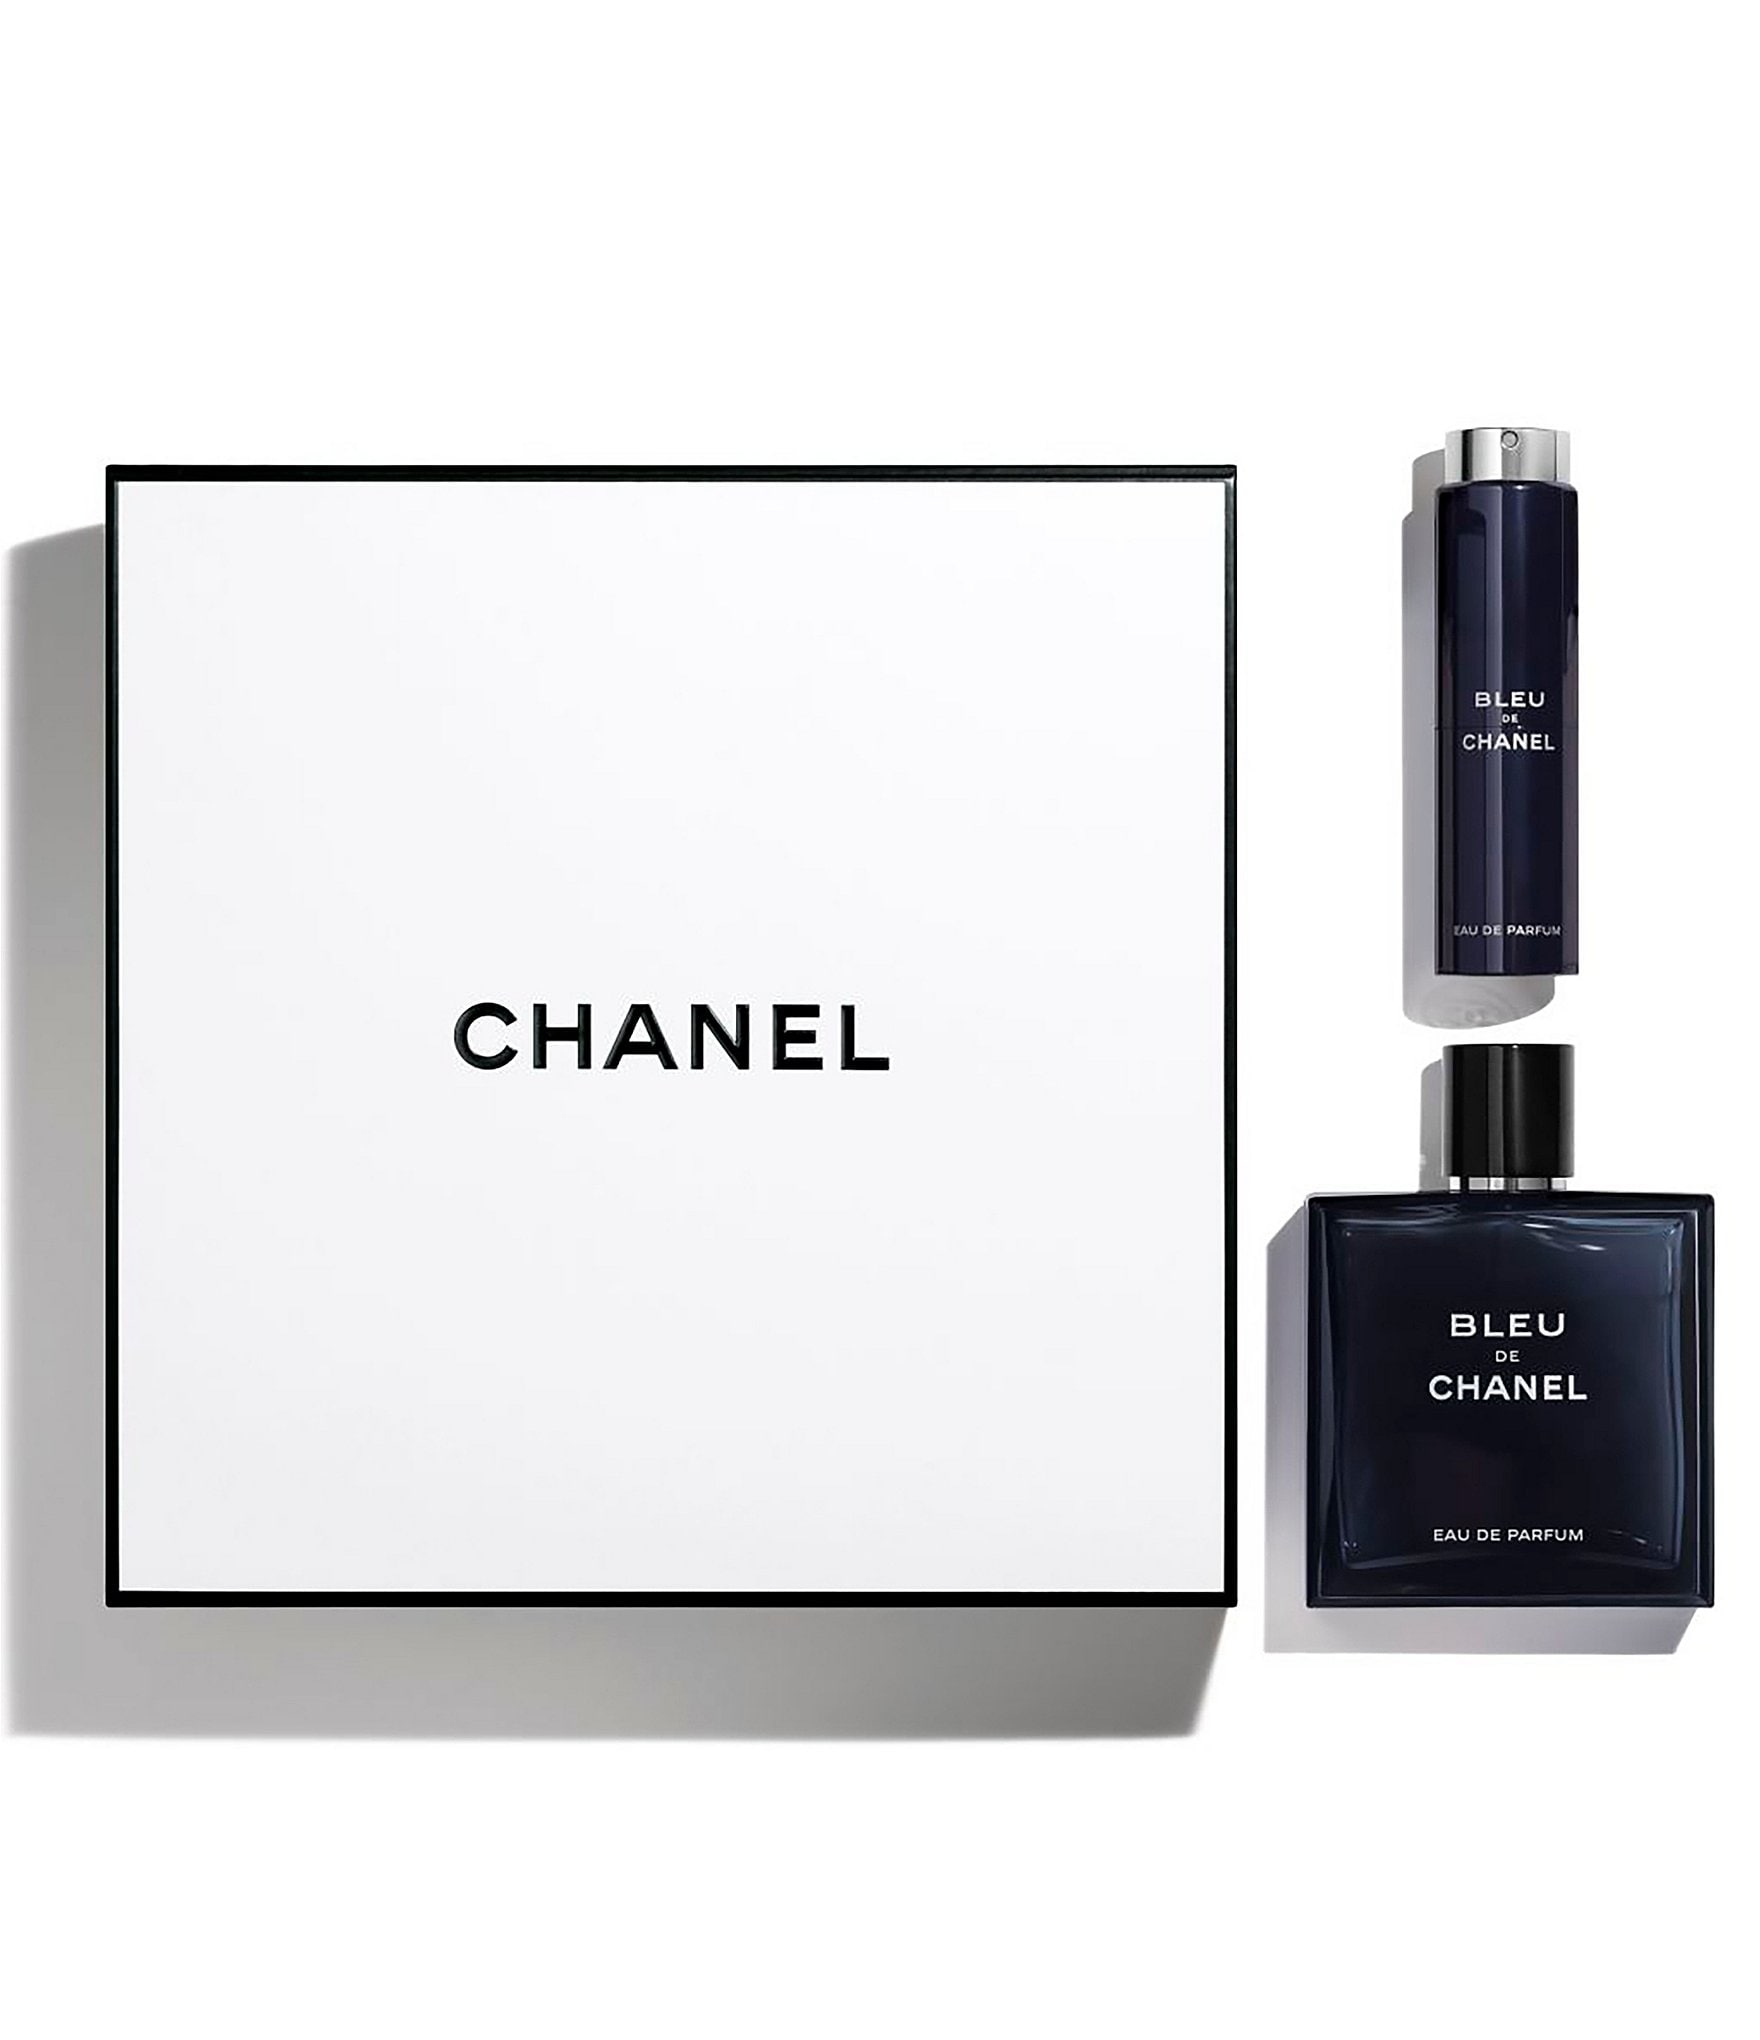 Bleu De Chanel 3.4 oz EAU DE TOILETTE SPRAY (for Men) Scent